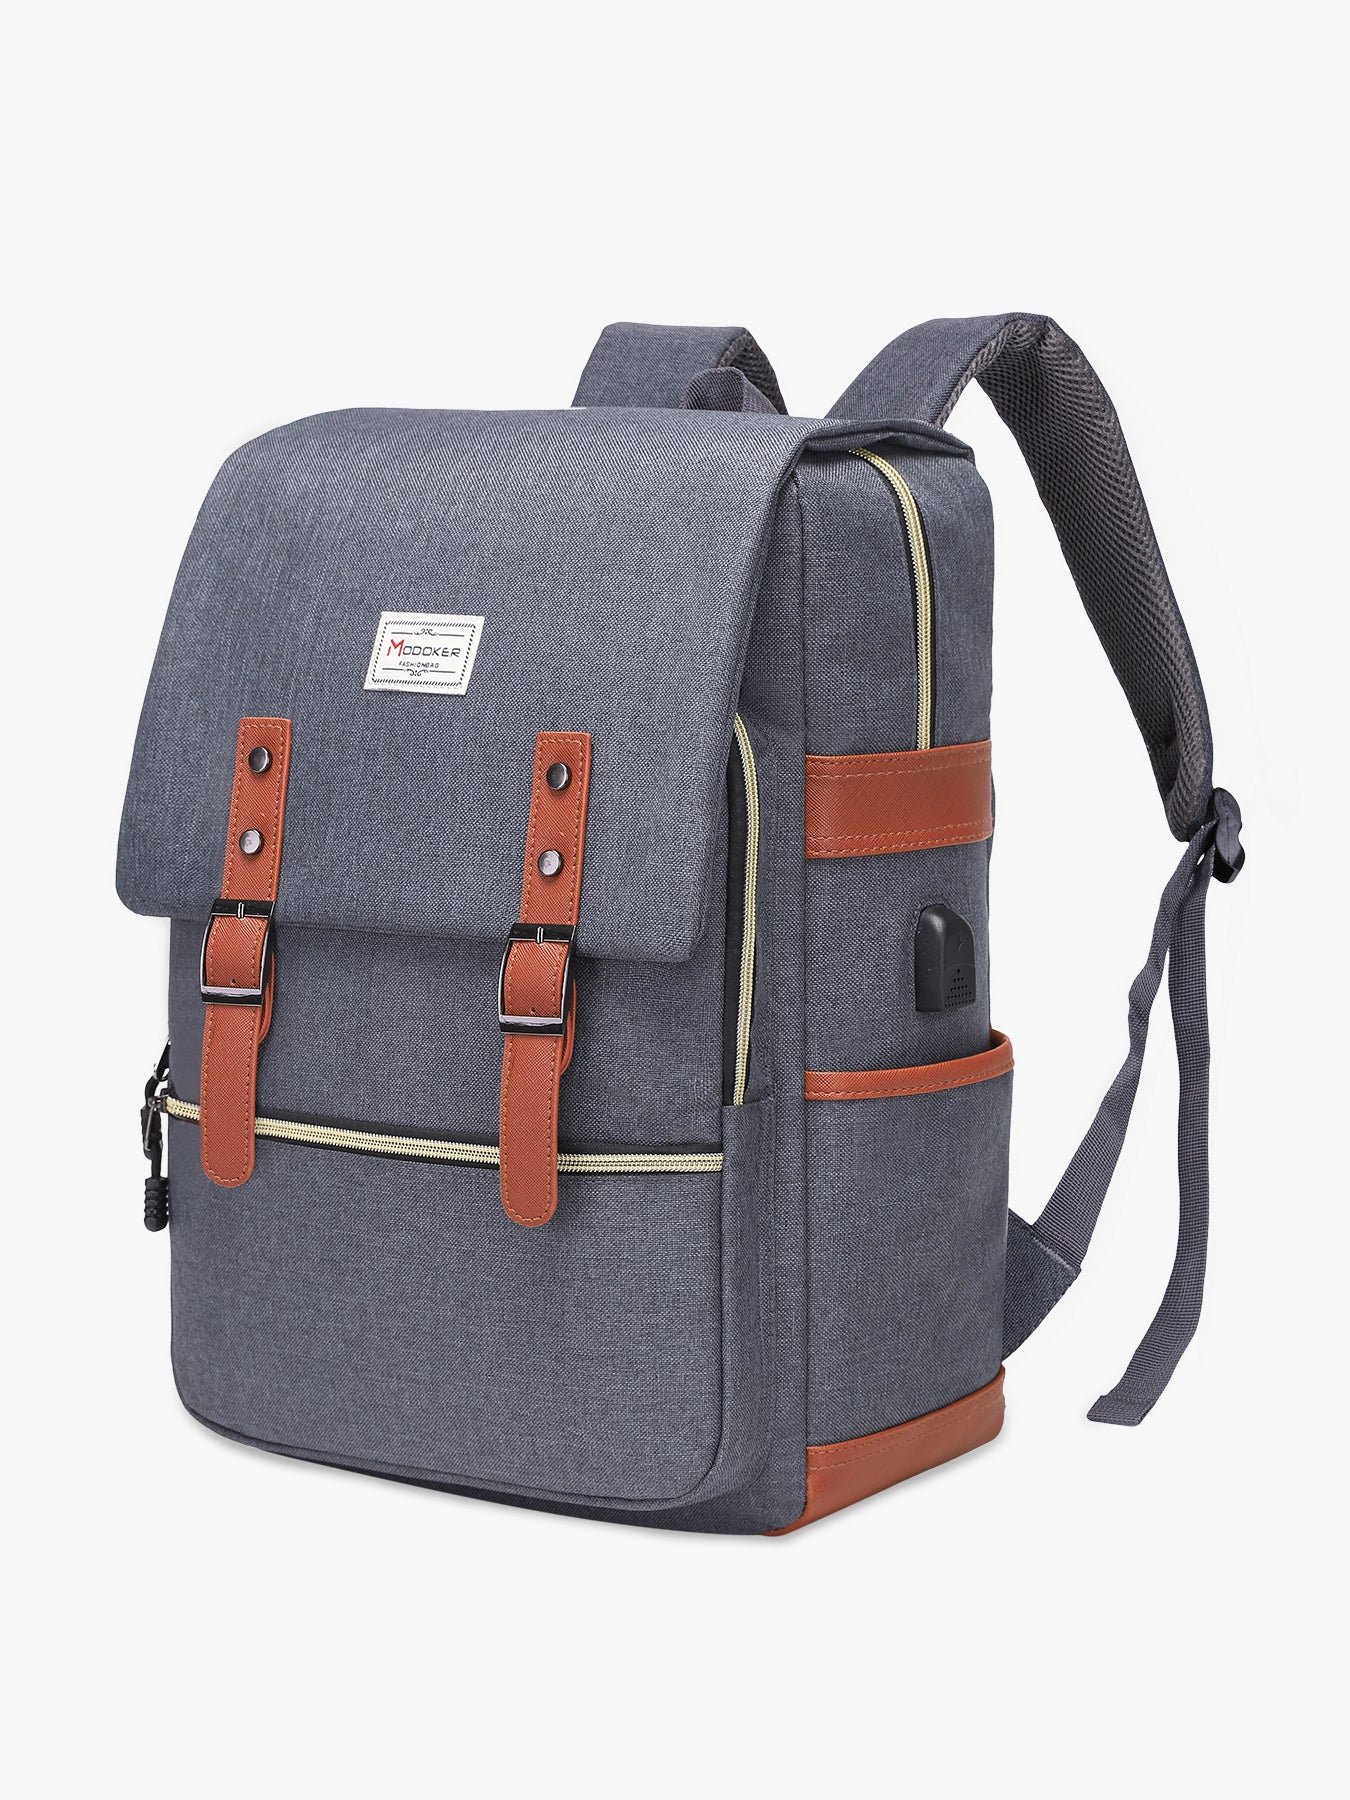 MODOKER Vintage Laptop Backpack for Women Men- Grey Travel Backpack